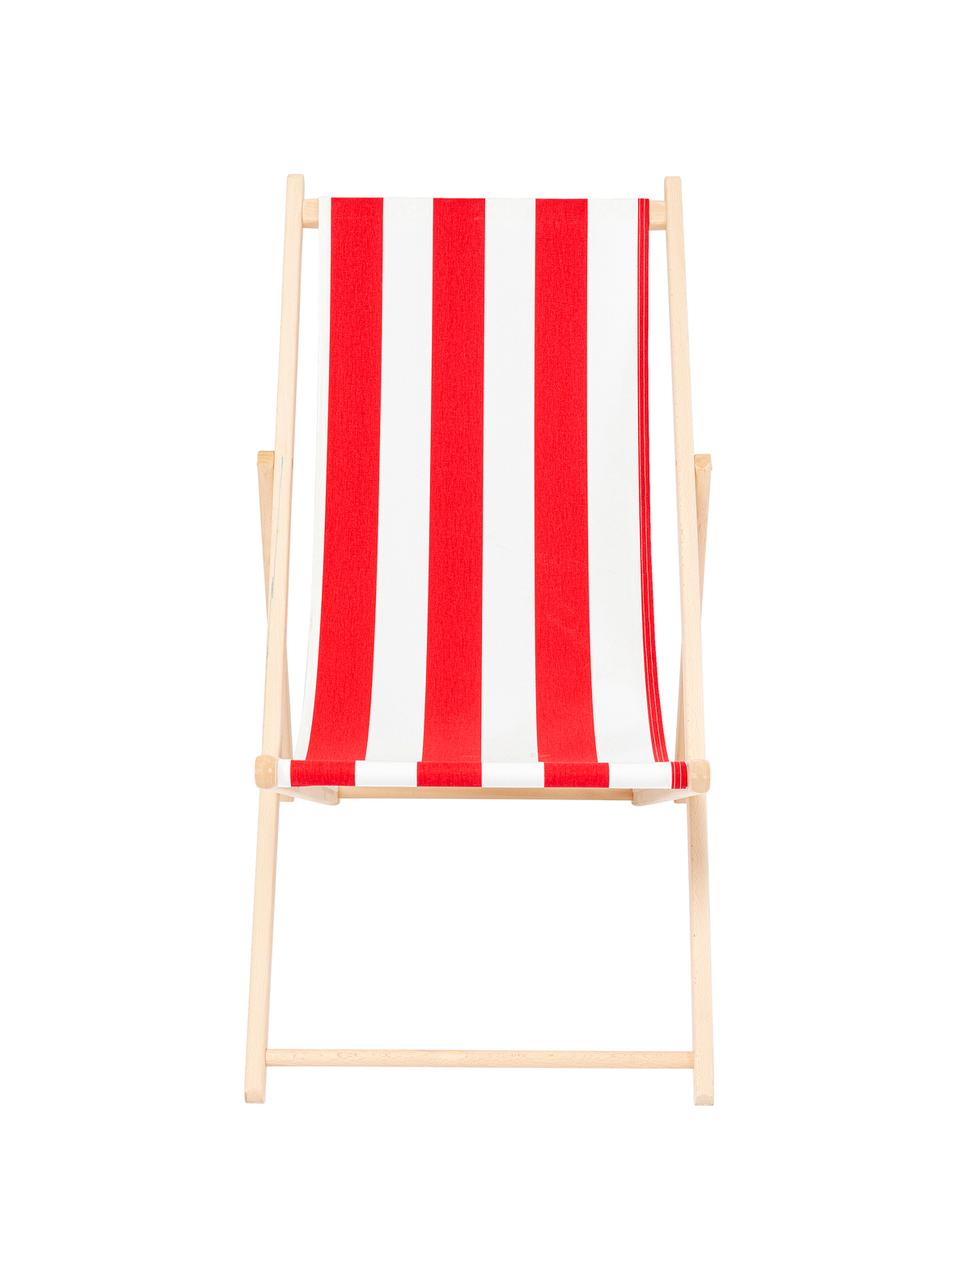 Leżak składany Hot Summer, Stelaż: drewno bukowe, Czerwony, biały, drewno bukowe, S 96 x G 56 cm